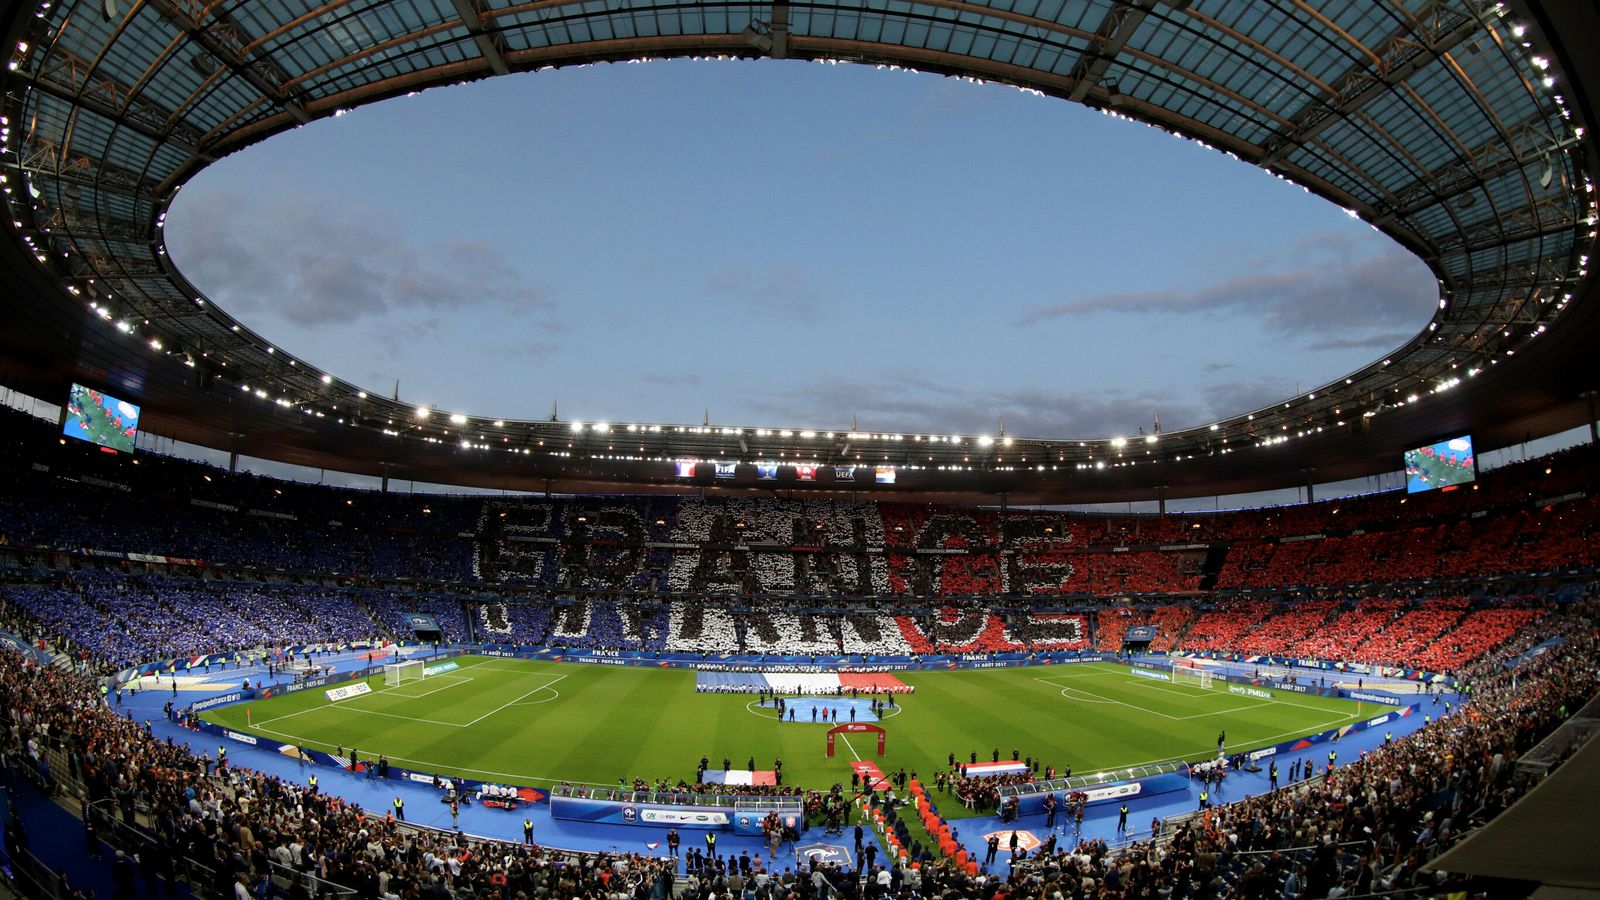 Un groupe de supporters de Liverpool critique l’attribution « totalement inacceptable » d’espaces pour fauteuils roulants par l’UEFA pour la finale de la Ligue des champions au Stade de France |  nouvelles du football